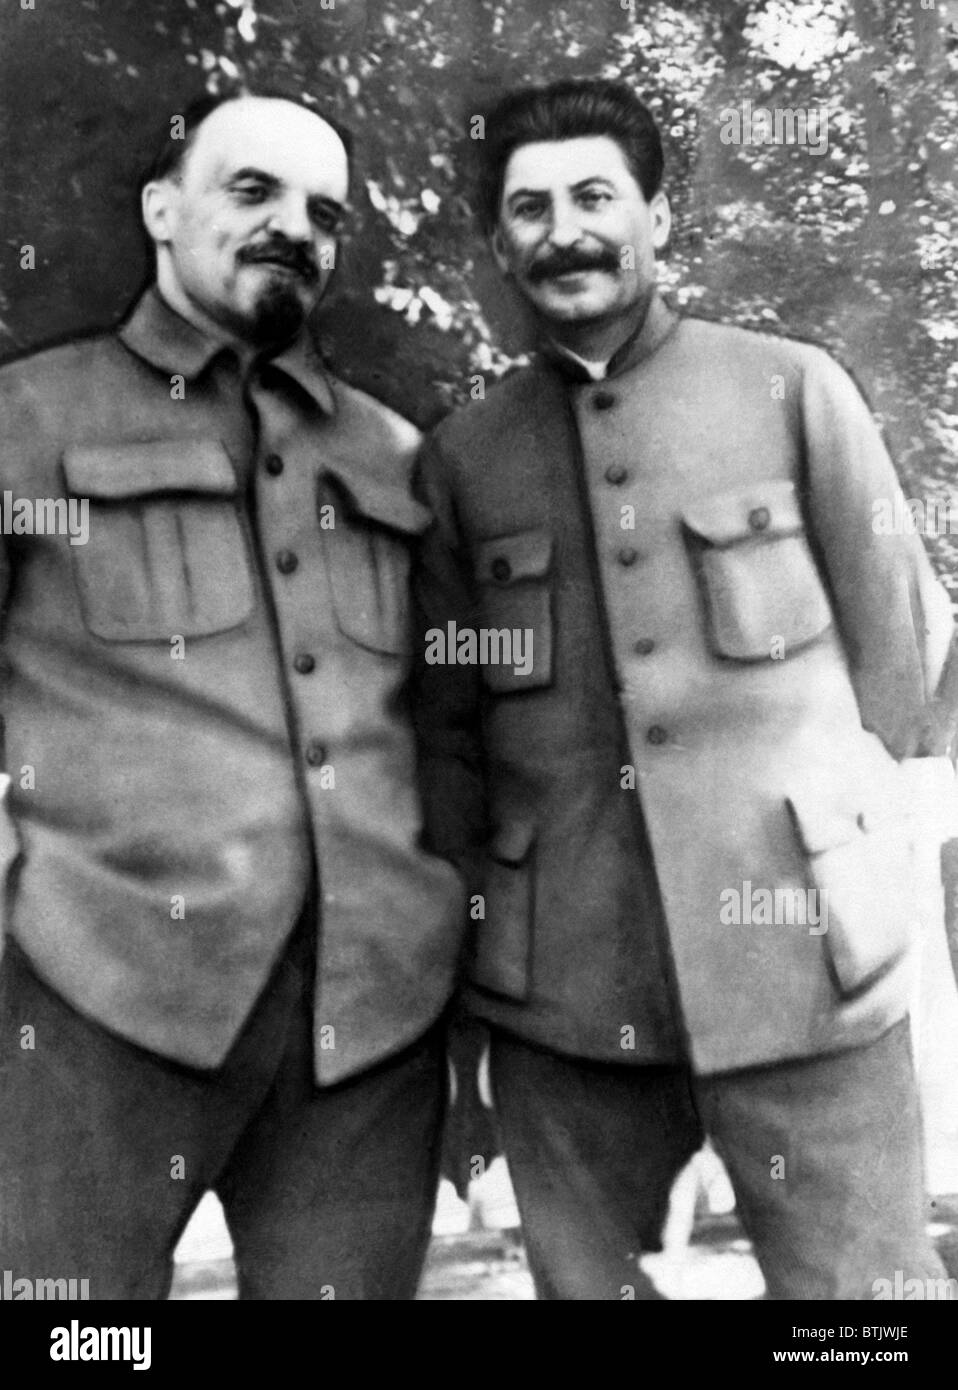 Sowjetische Premier Vladimir Lenin und zukünftige sowjetische Premier Joseph Stalin (aus dem Jahr 1922 Generalsekretär der kommunistischen Partei), Ru Stockfoto